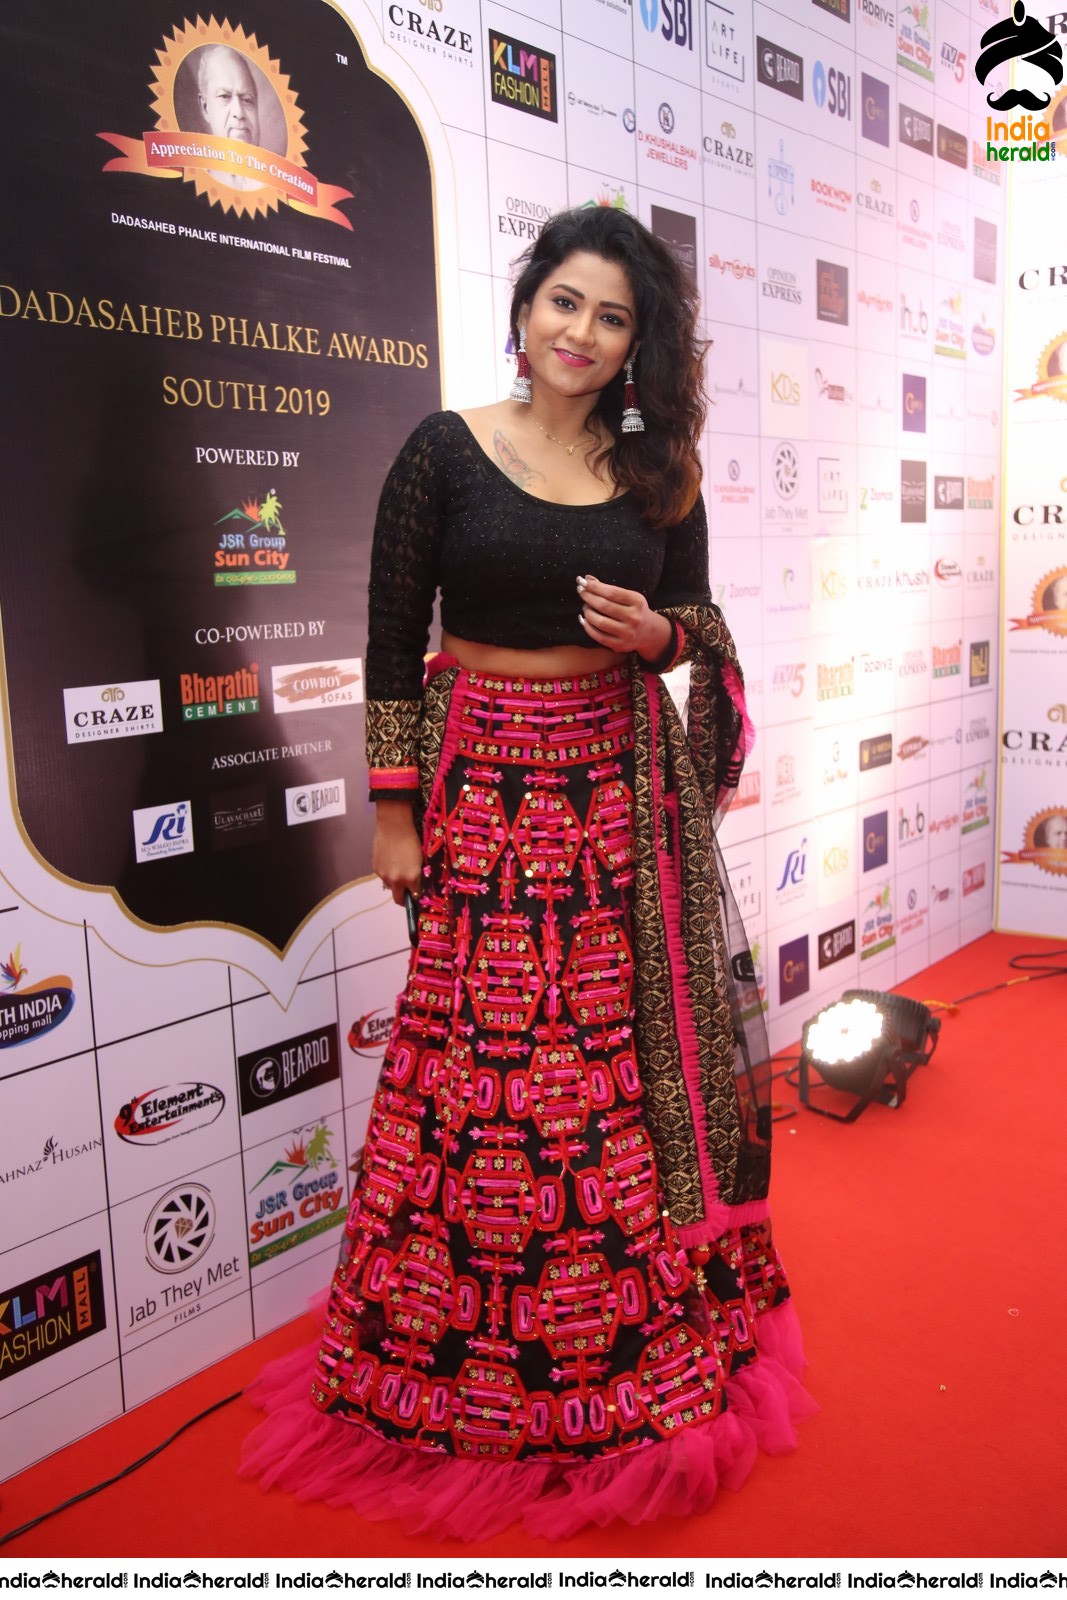 Actress Jyothi Recent Photos at an event Red Carpet